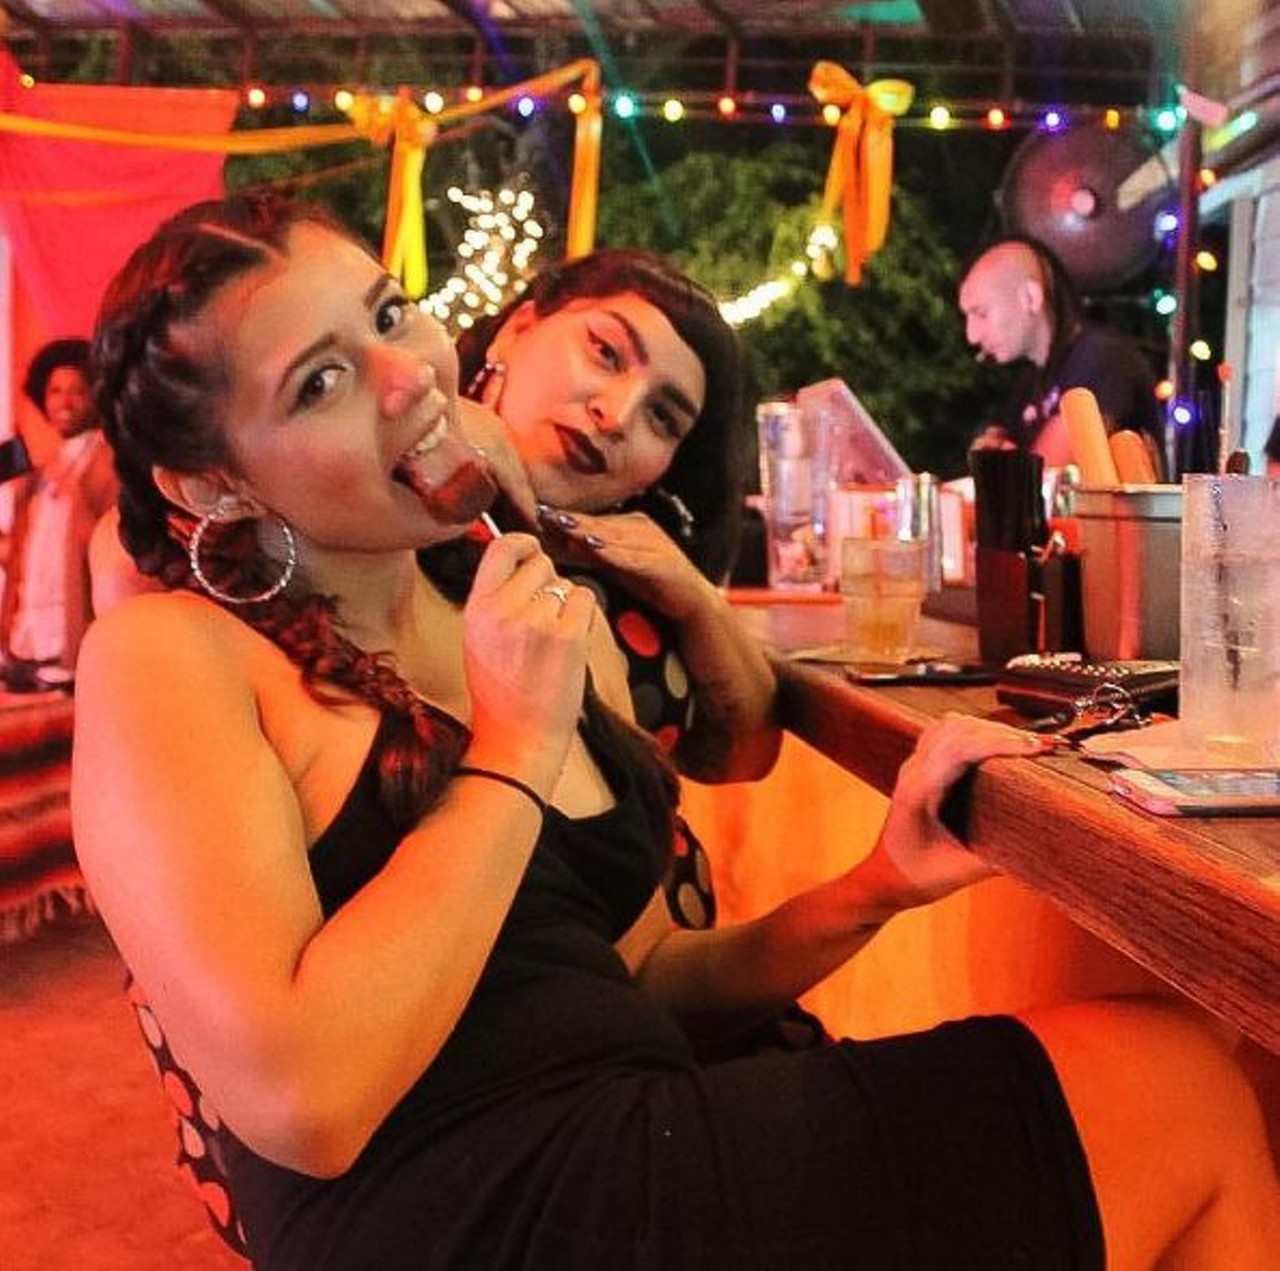 Best Lesbian Bar:
Three-way tie
La Botanica, 2911 N. St. Mary&#146;s St., (210) 716-0702, vivalabotanica.com
Photo via Instagram, deniseylosdinos